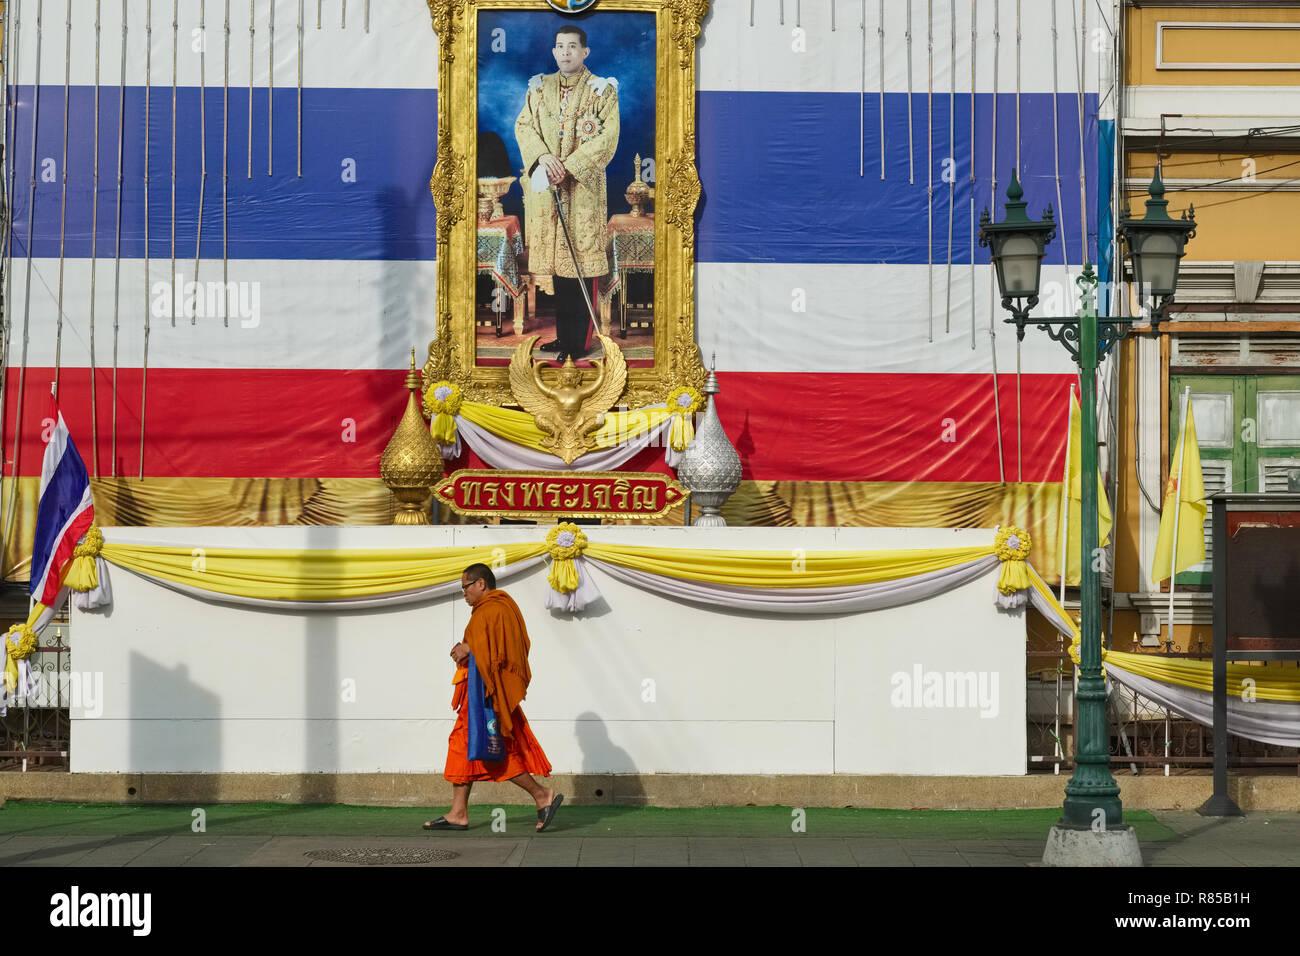 Un moine bouddhiste thaï géant passe sous un drapeau et un portrait du roi Maha Vajiralongkorn, en face de l'école Gulab Suan, Bangkok, Thaïlande Banque D'Images